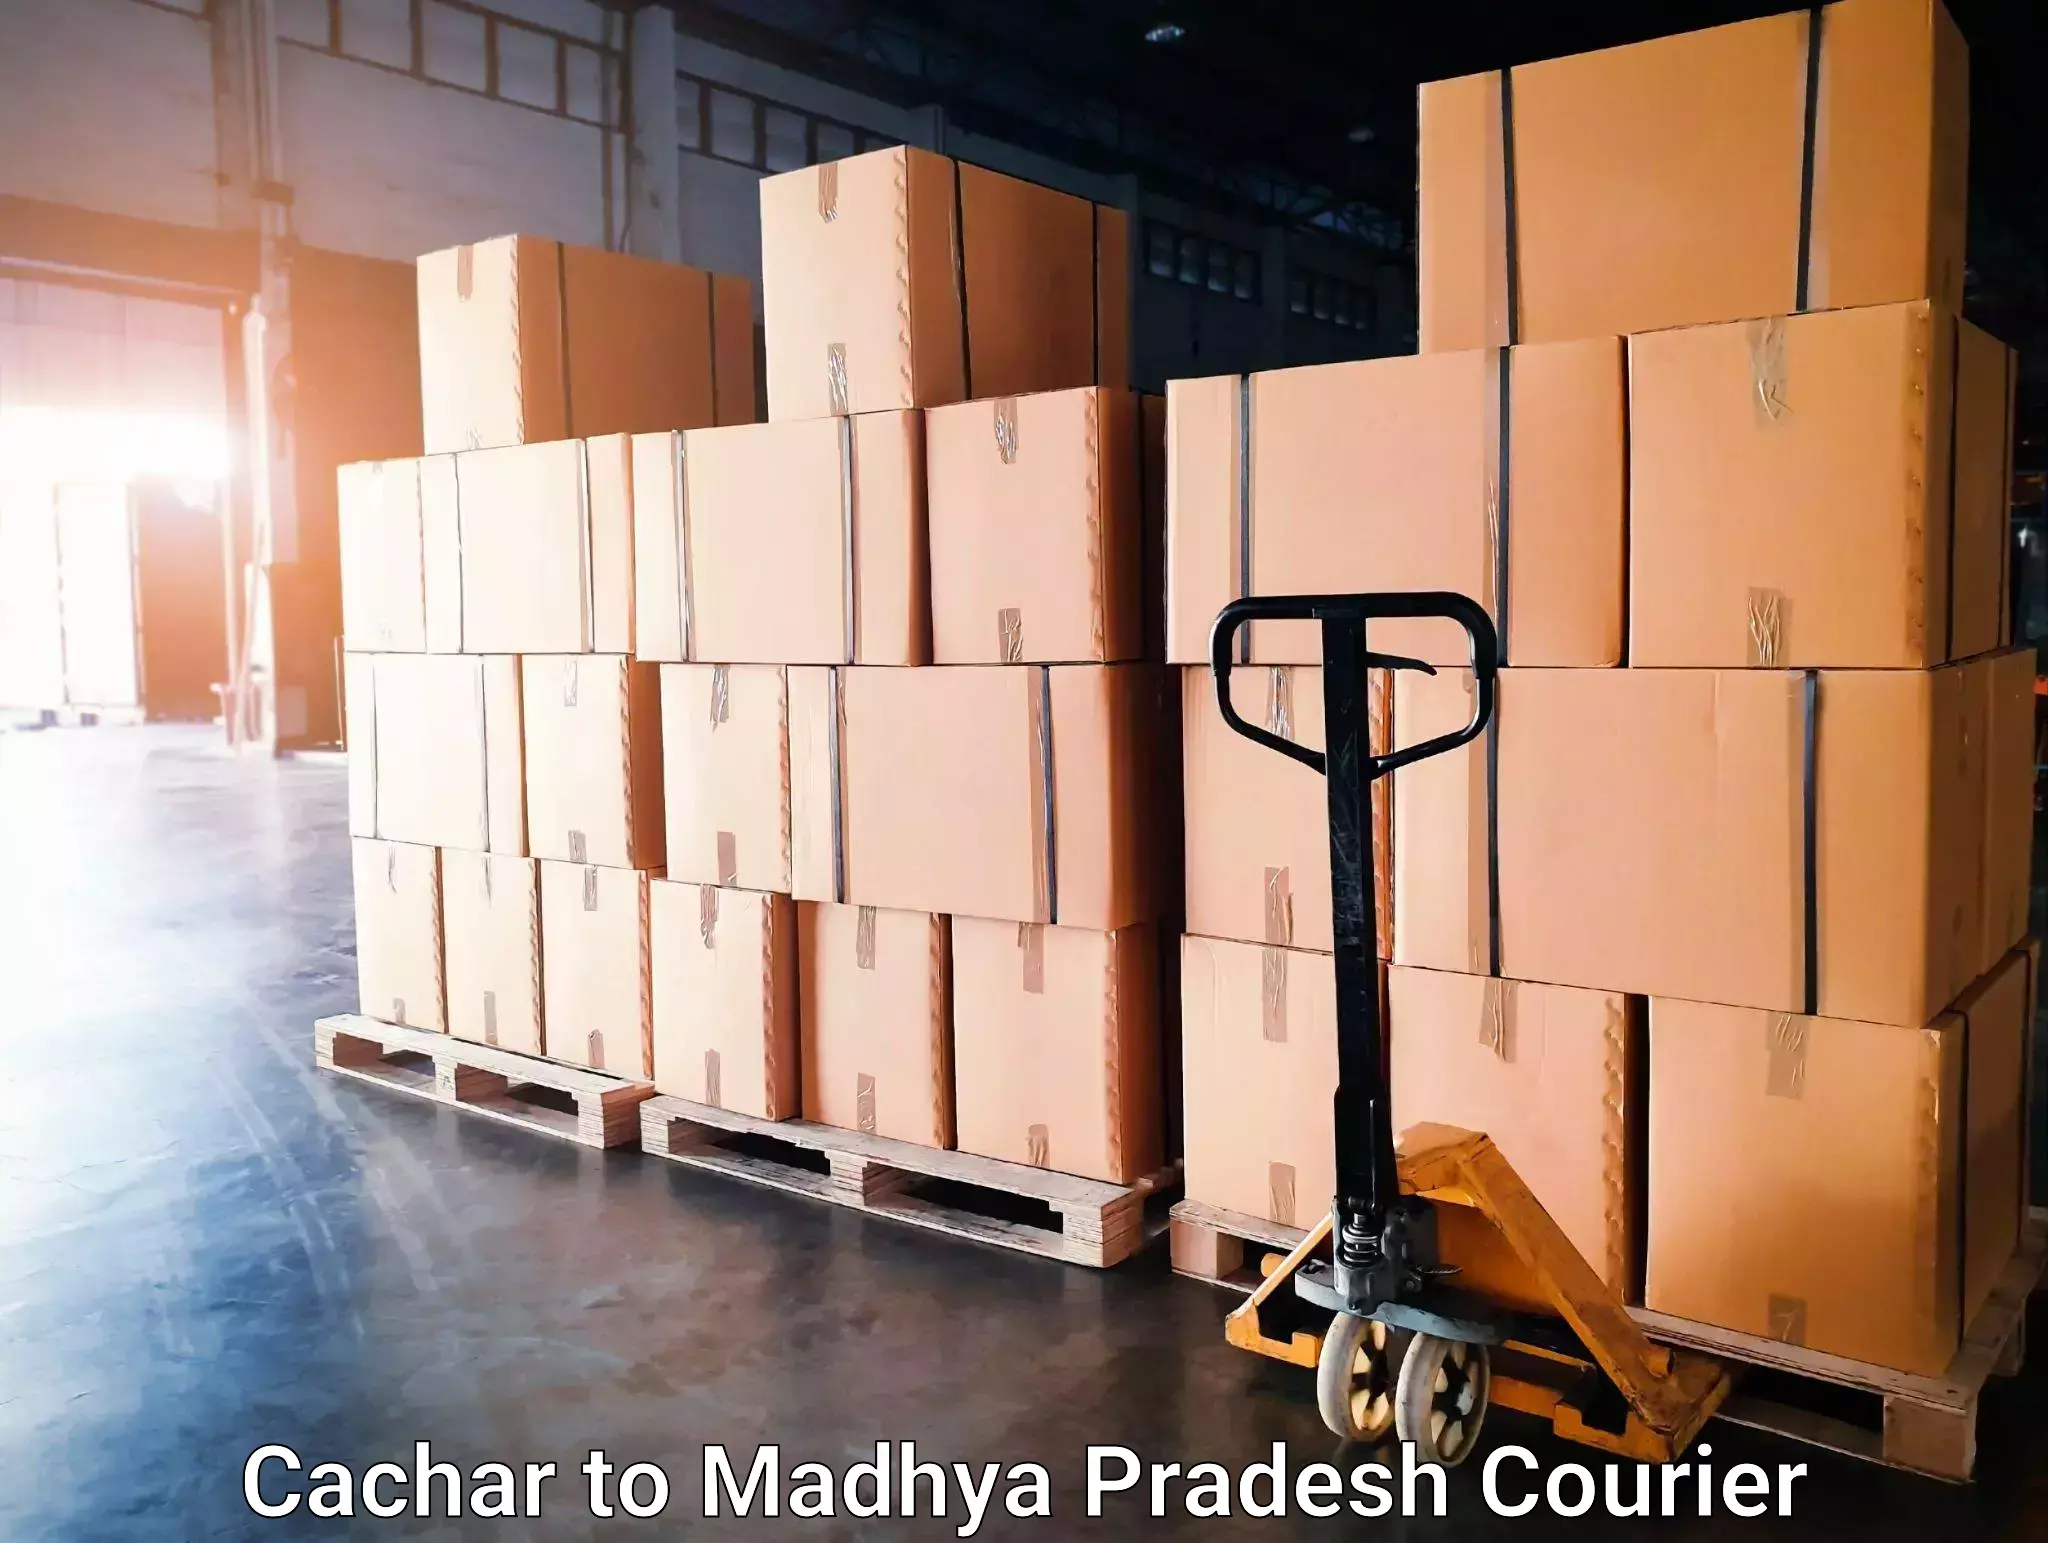 Premium courier solutions Cachar to Dindori